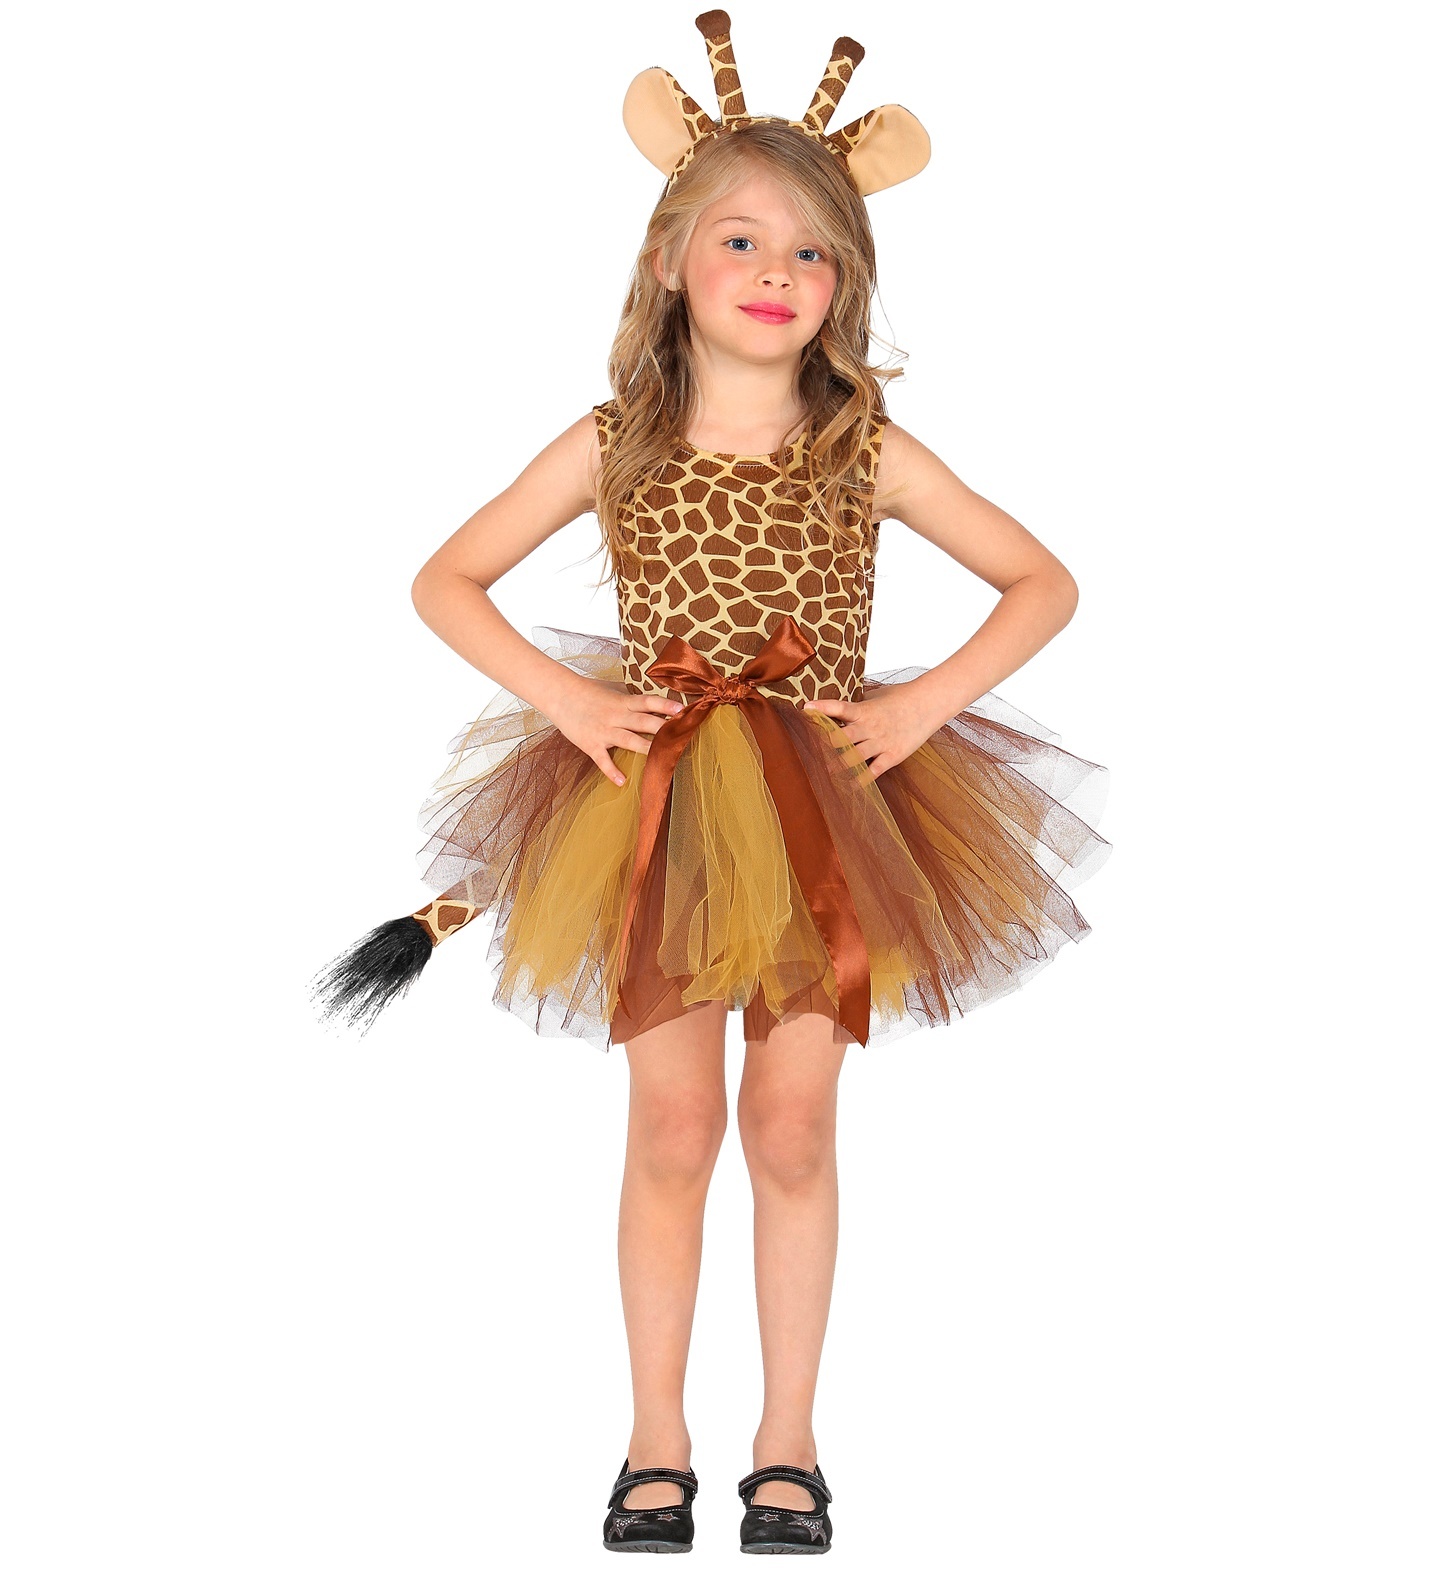 Widmann - Giraf Kostuum - Elegante Ballet Giraffe Giraldine - Meisje - bruin - Maat 110 - Carnavalskleding - Verkleedkleding